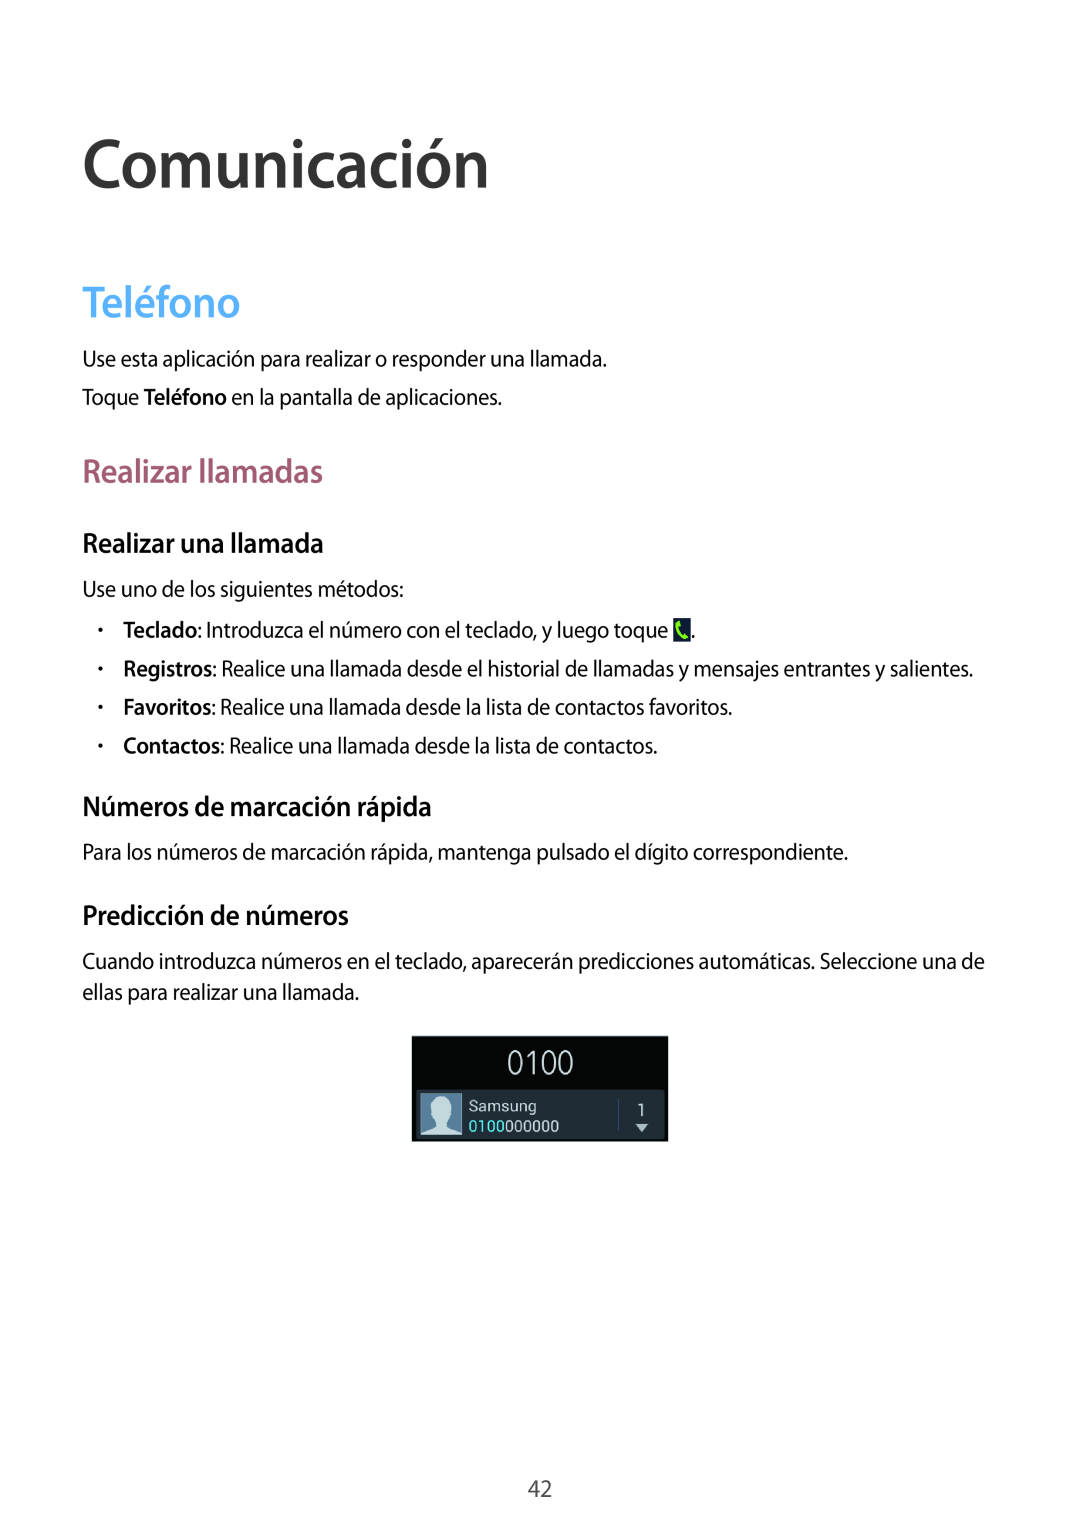 Samsung GT-I8730ZWAYOG manual Comunicación, Teléfono, Realizar llamadas, Realizar una llamada, Números de marcación rápida 